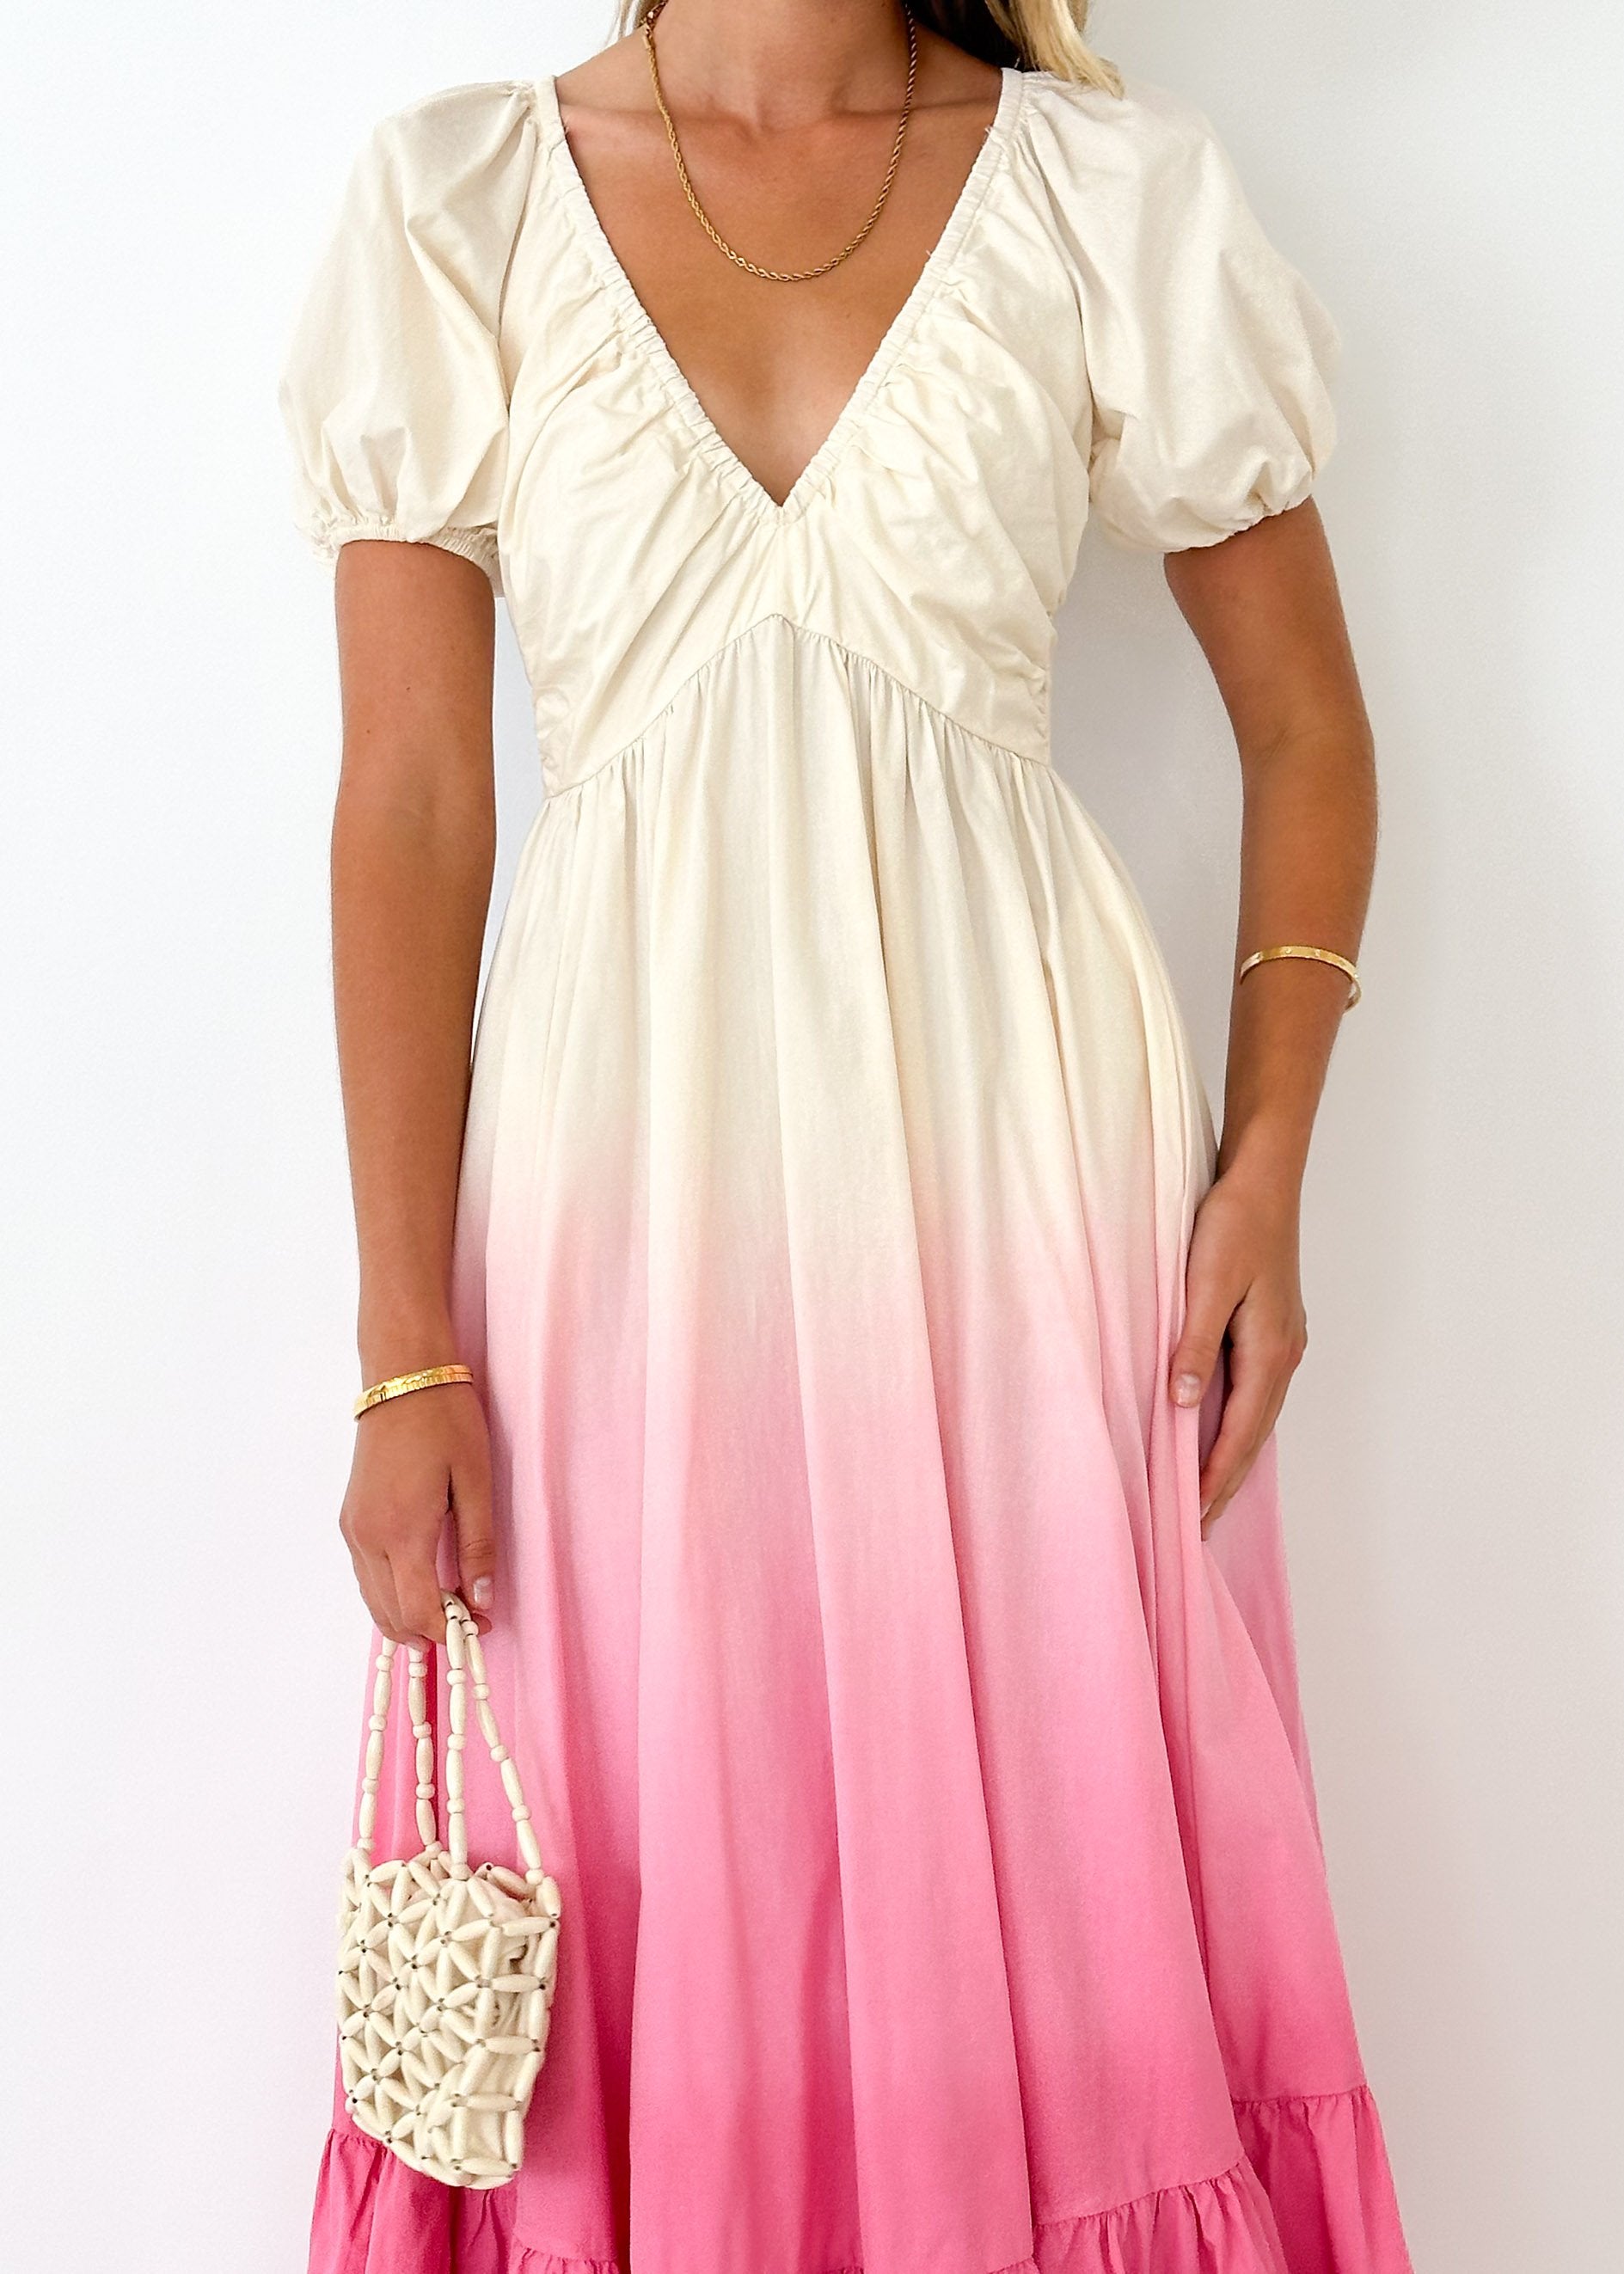 Medea Maxi Dress - Pink Ombre